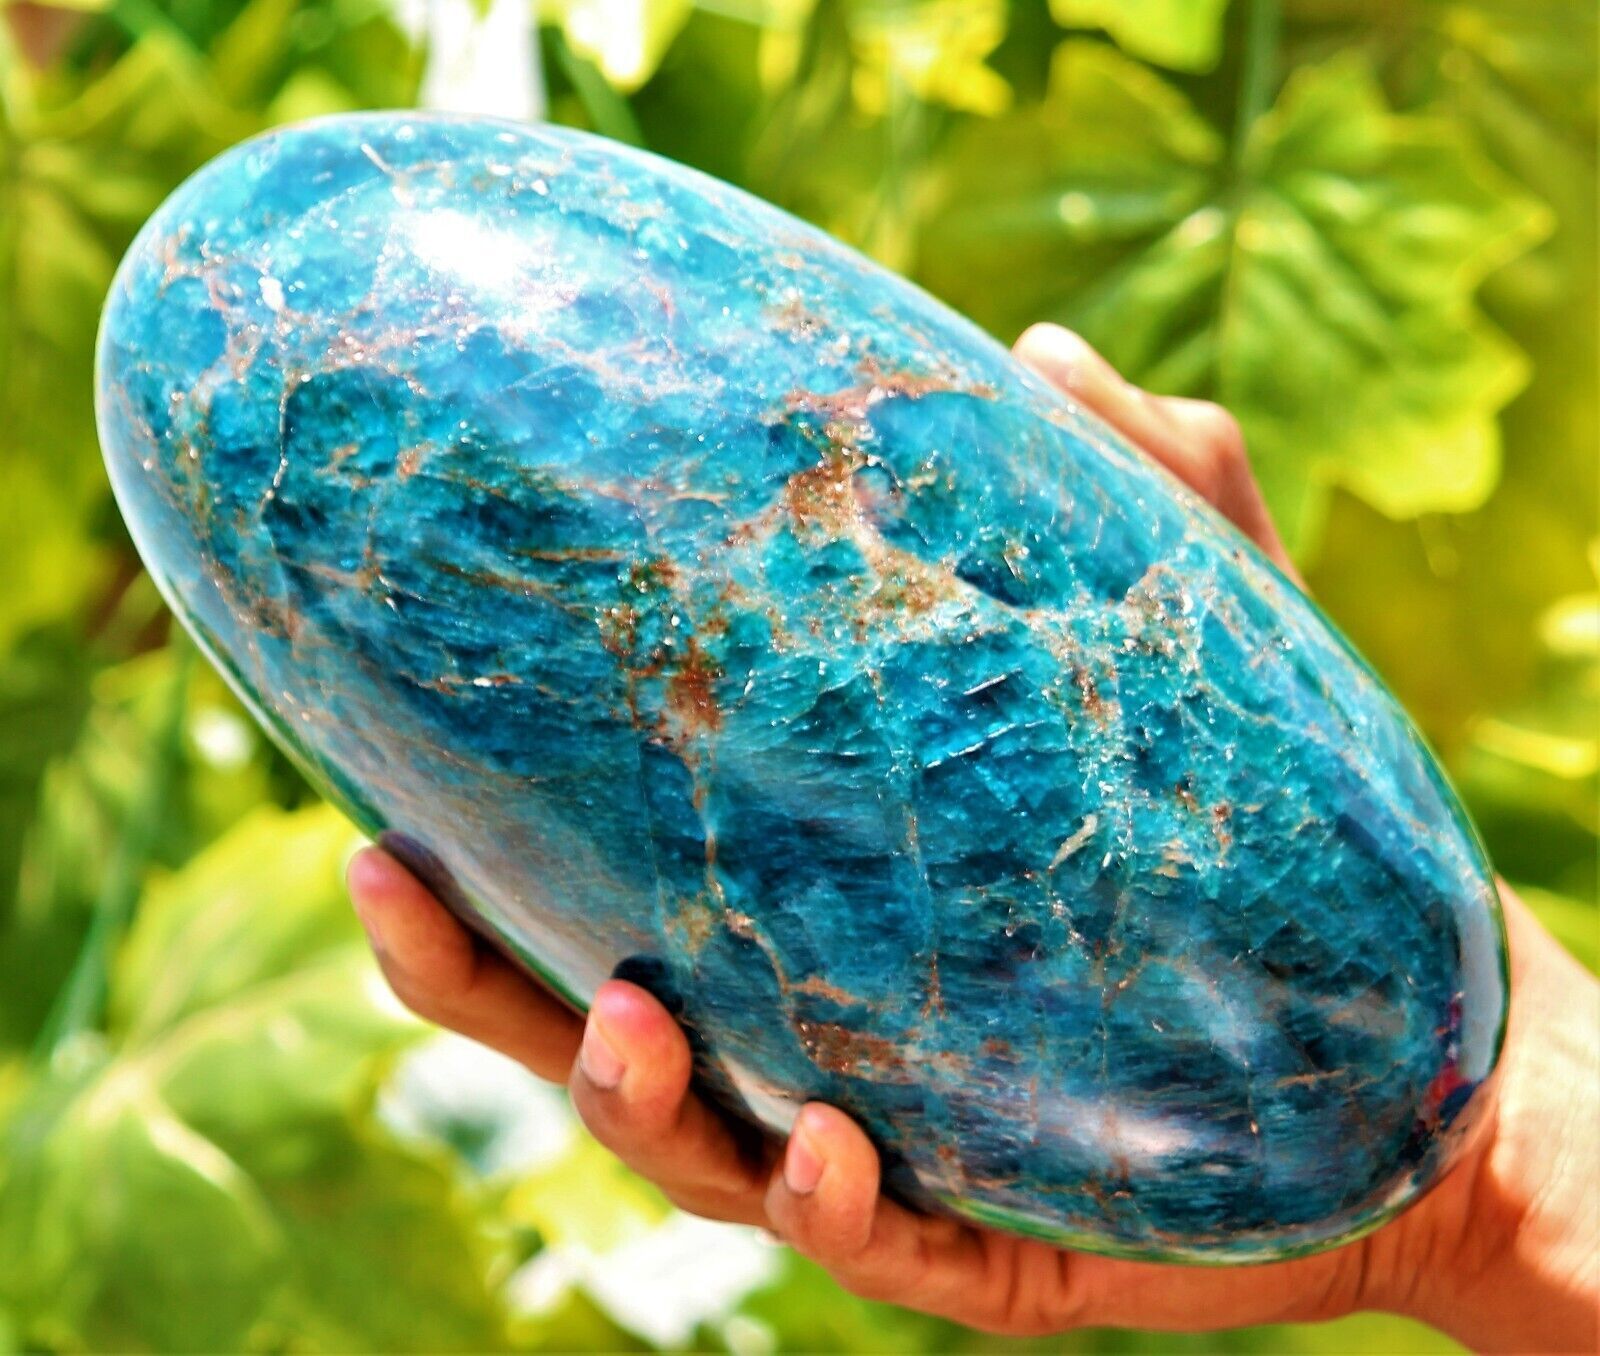 210MM Large Blue Apatite Crystal Gemstone Healing Energy Stone Lingam Specimen